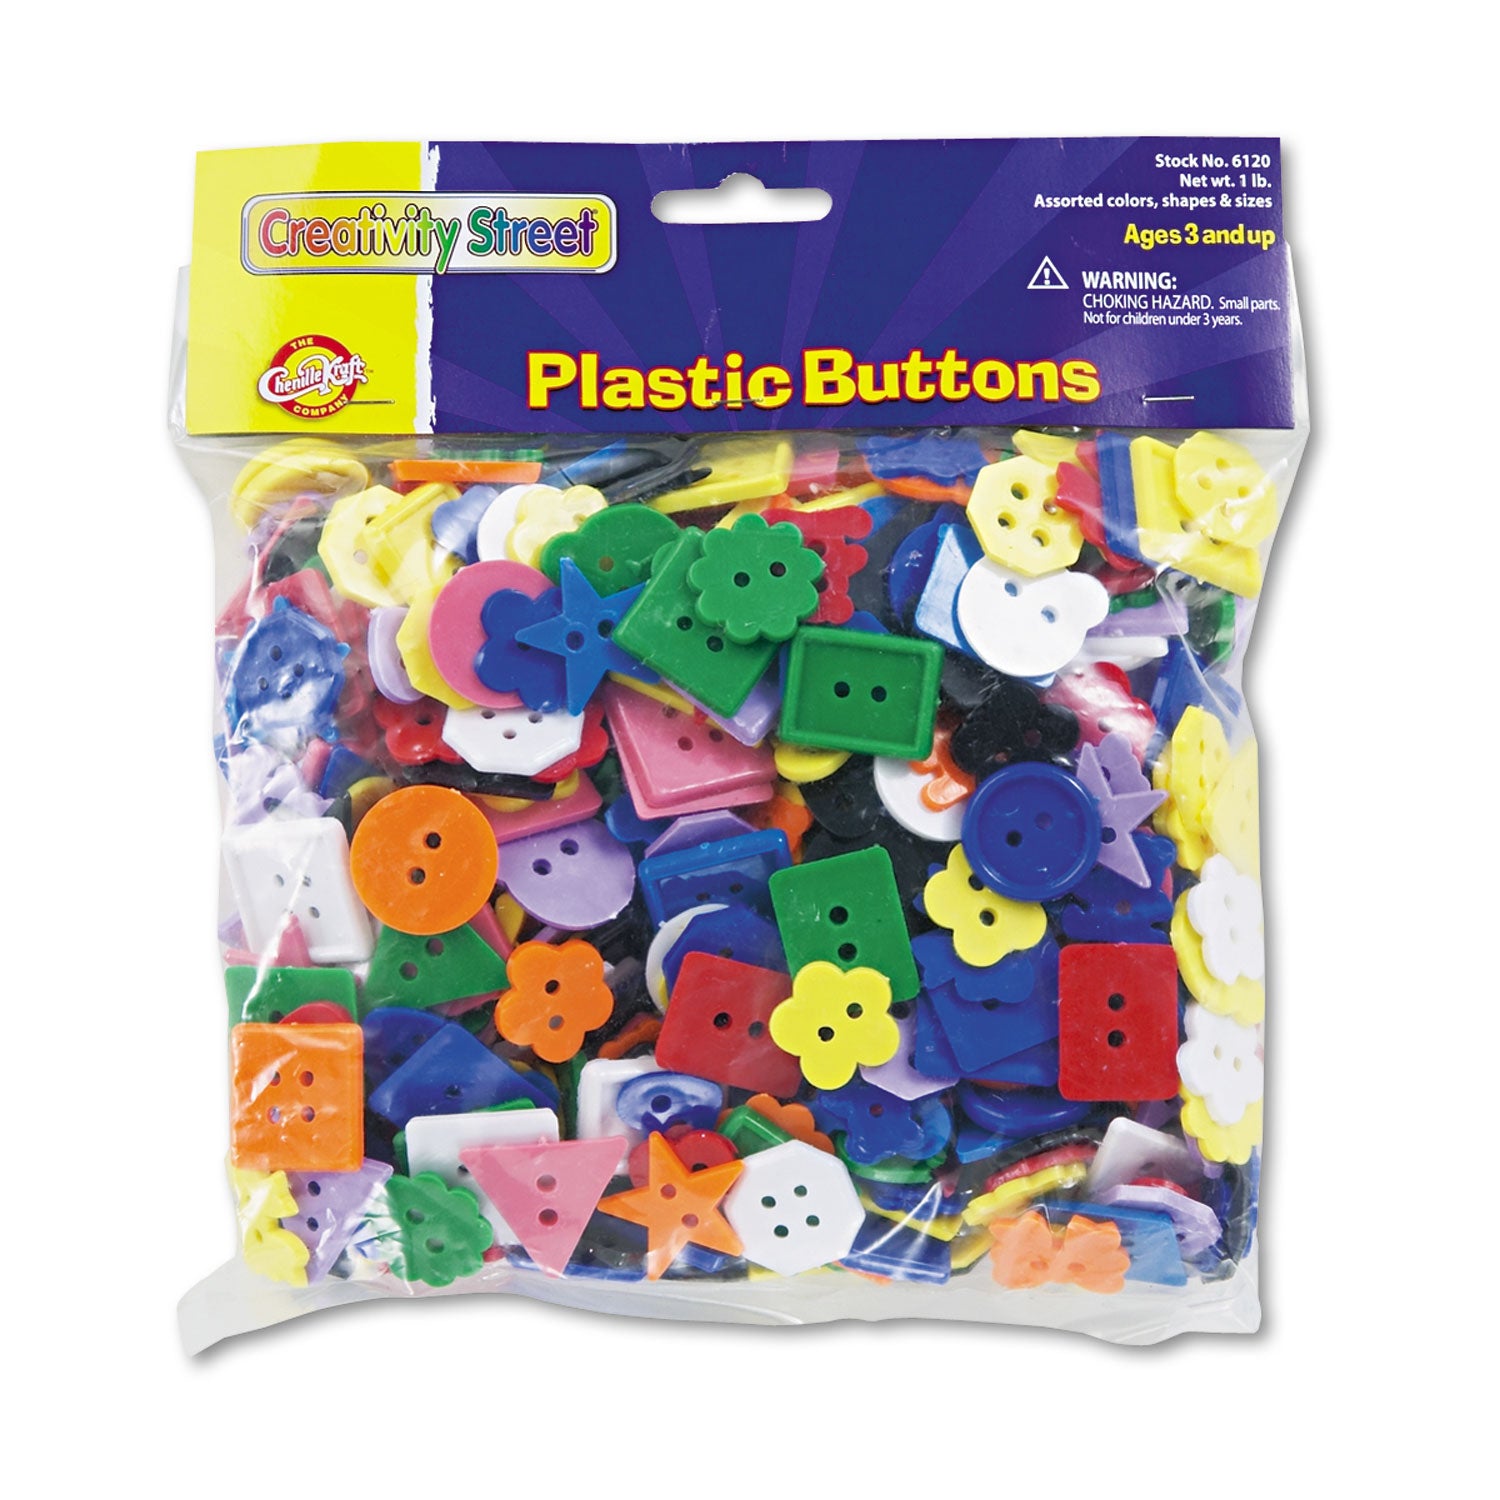 Plastic Button Assortment, 1 lb, Assorted Colors/Shapes/Sizes - 